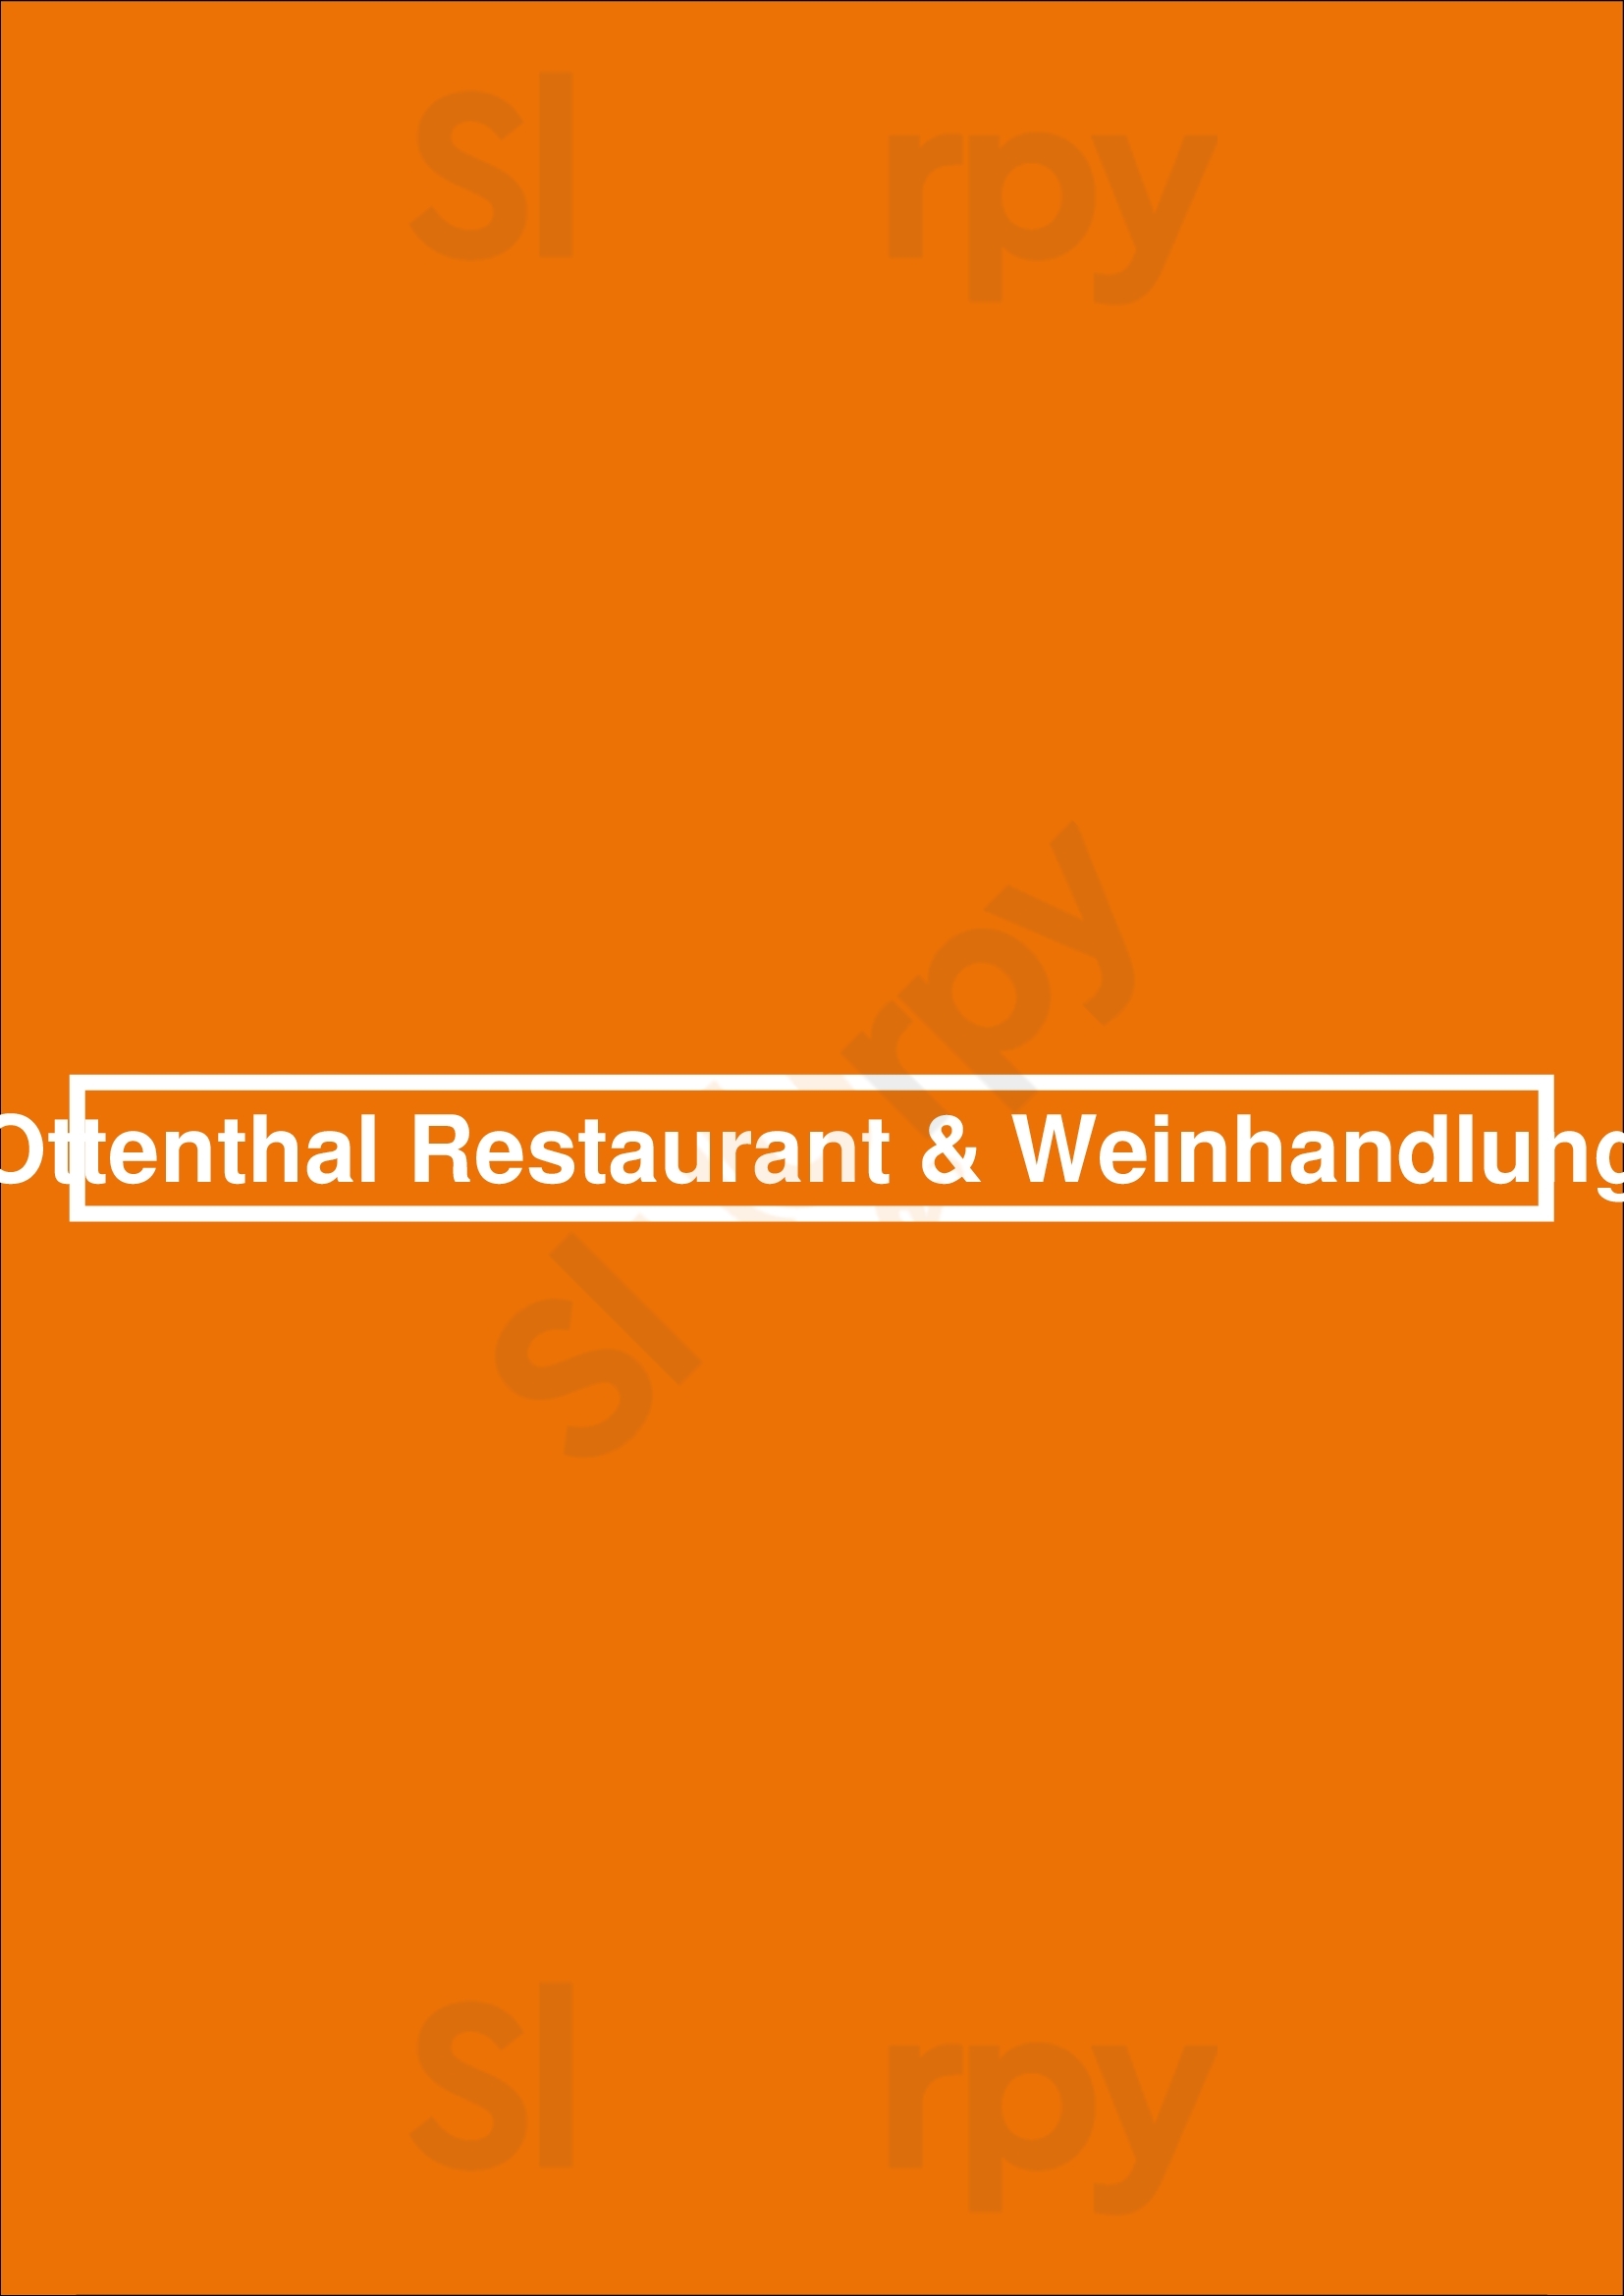 Ottenthal Restaurant & Weinhandlung Berlin Menu - 1